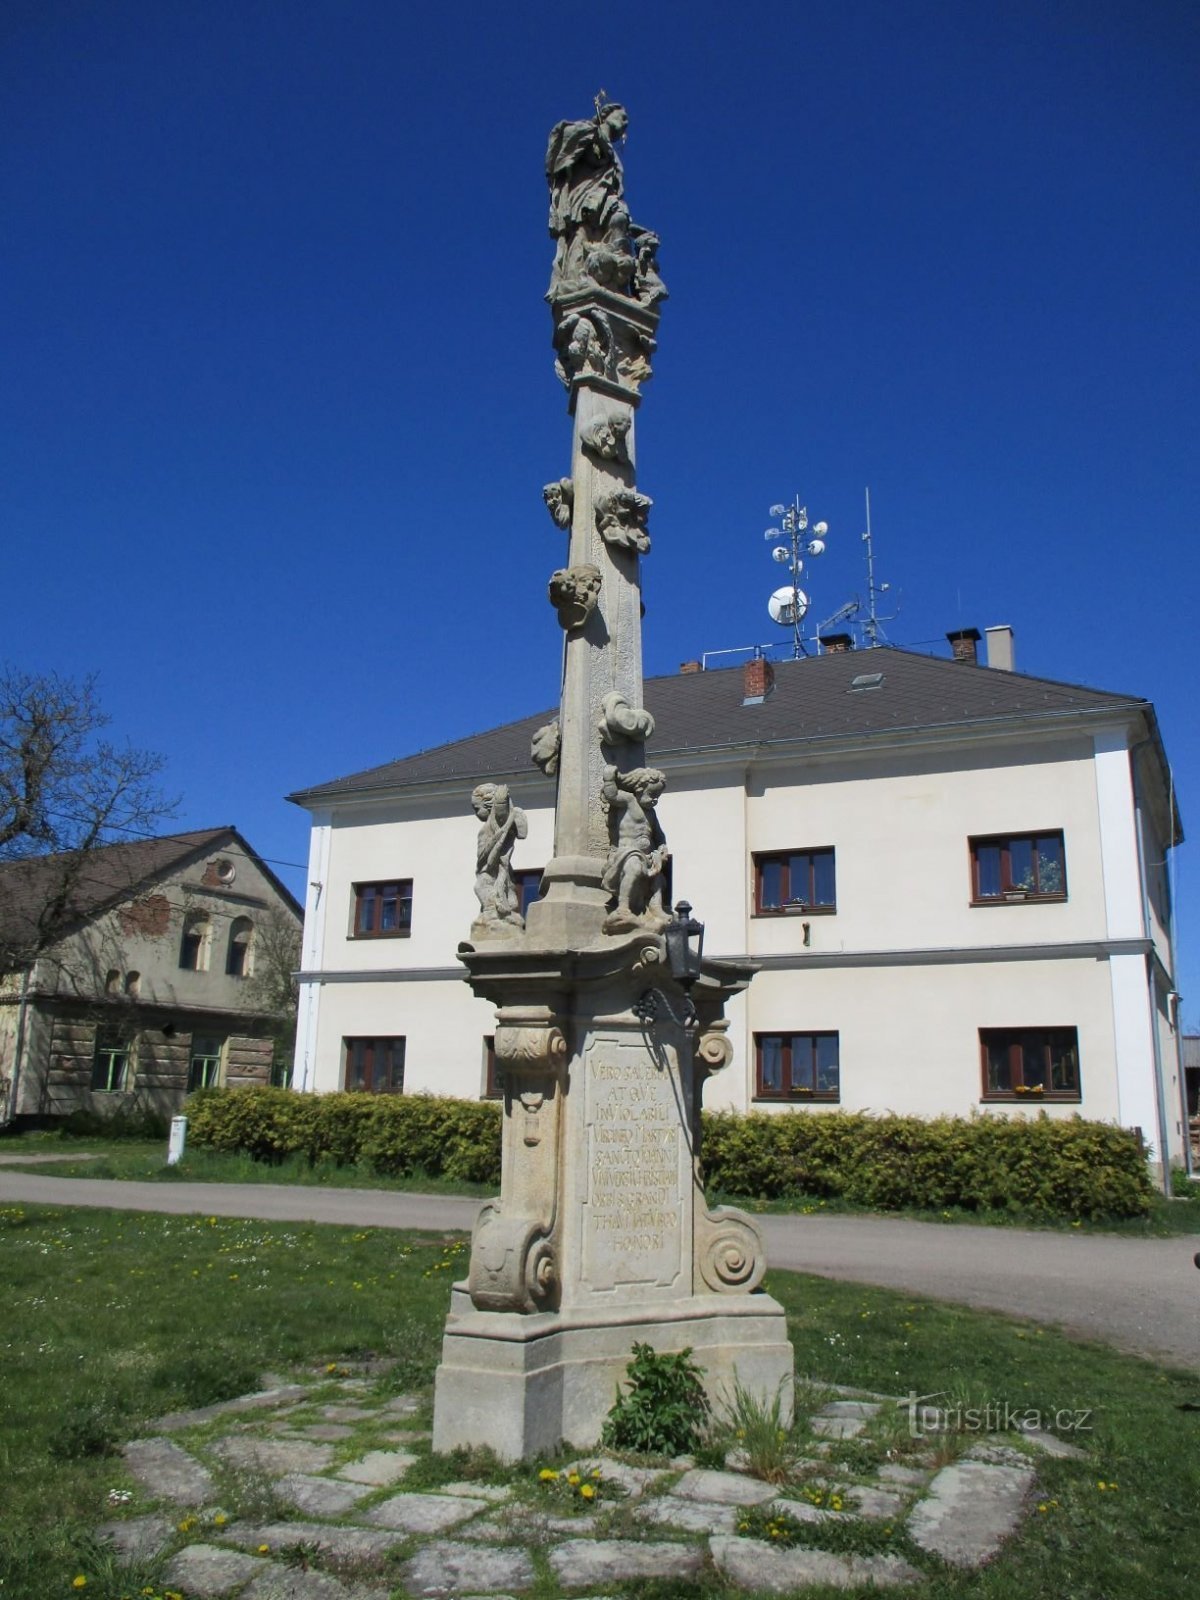 Uma coluna com uma estátua de St. João de Nepomuck (Chotěborky, 20.4.2020 de abril de XNUMX)